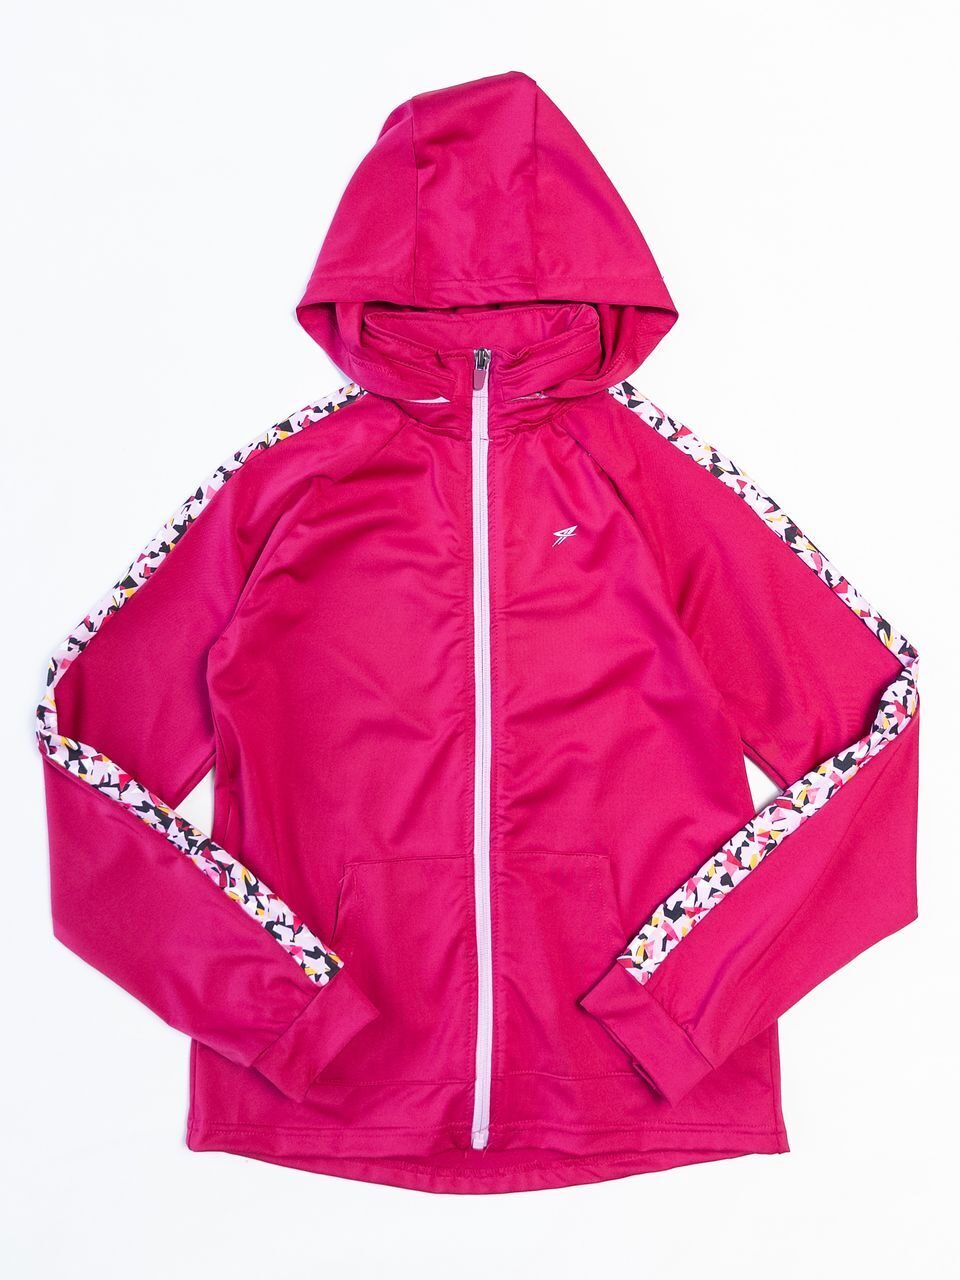 Толстовка спортивная для девочки со скрытым капюшоном, рукав реглан цвет розовый/узор рост 152 см Primark